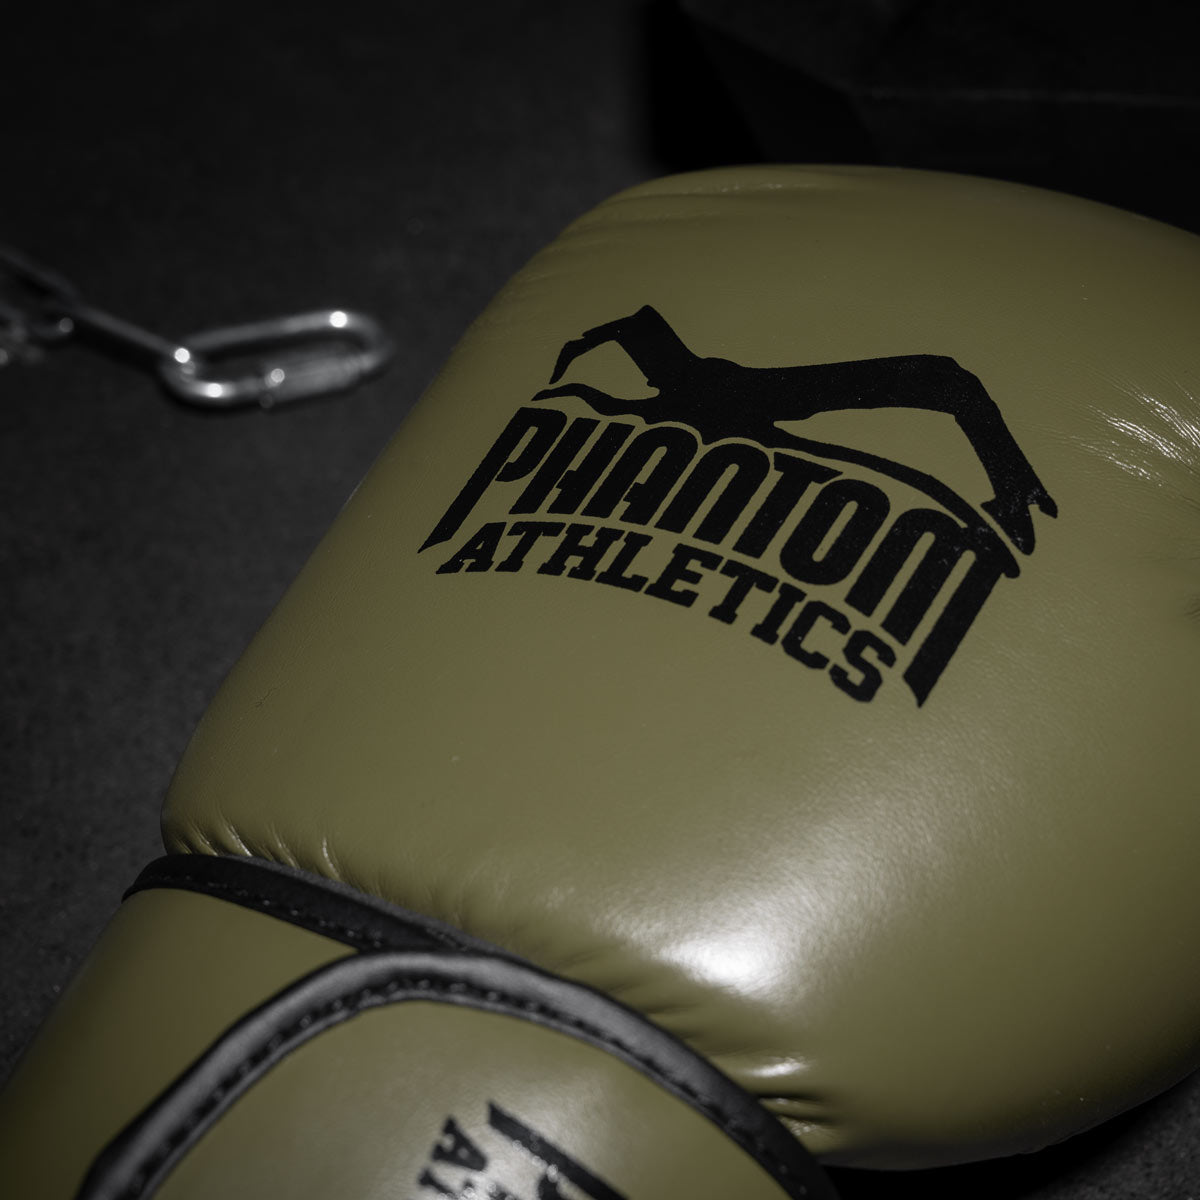 Die Phantom Elite ATF Boxhandschuhe für dein Kampfsport Training. Profi Boxhandschuhe mit fantastischer Polsterung, Mesh Einsatz im Innenhandbereich sowie einem überragenden Handgelenkssupport. 